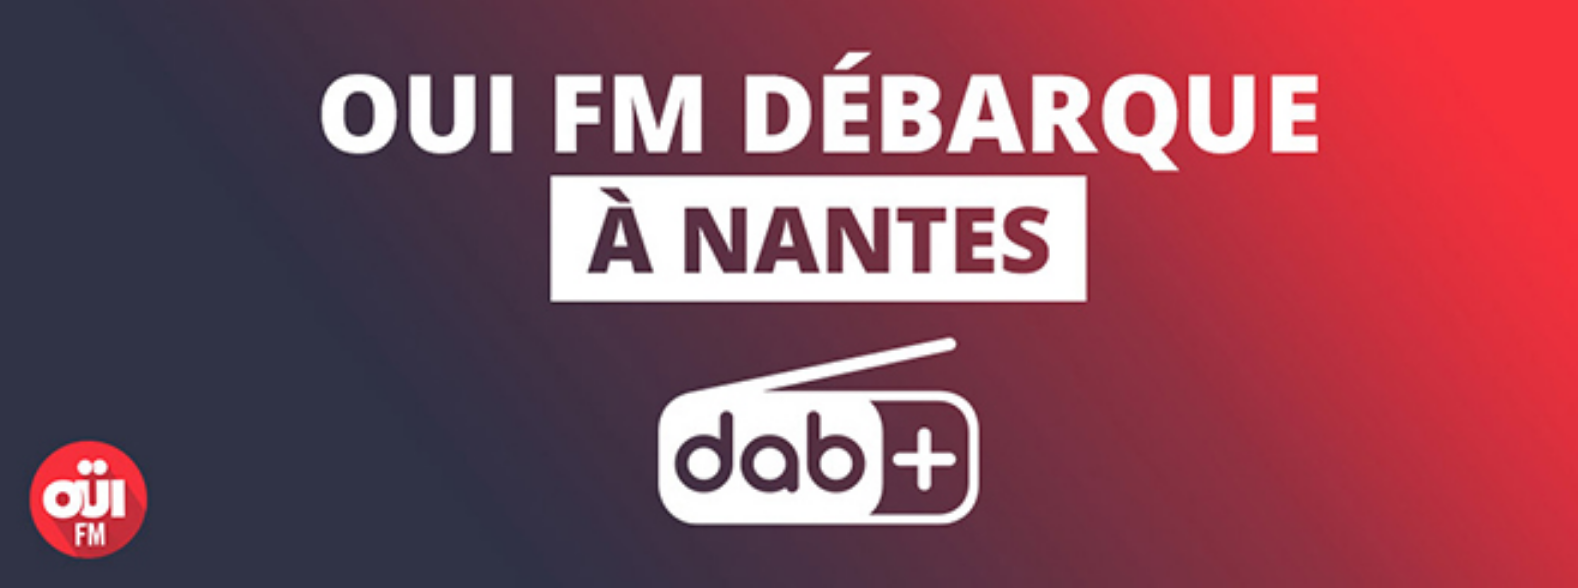 DAB+ : Oui FM bientôt diffusée à Nantes